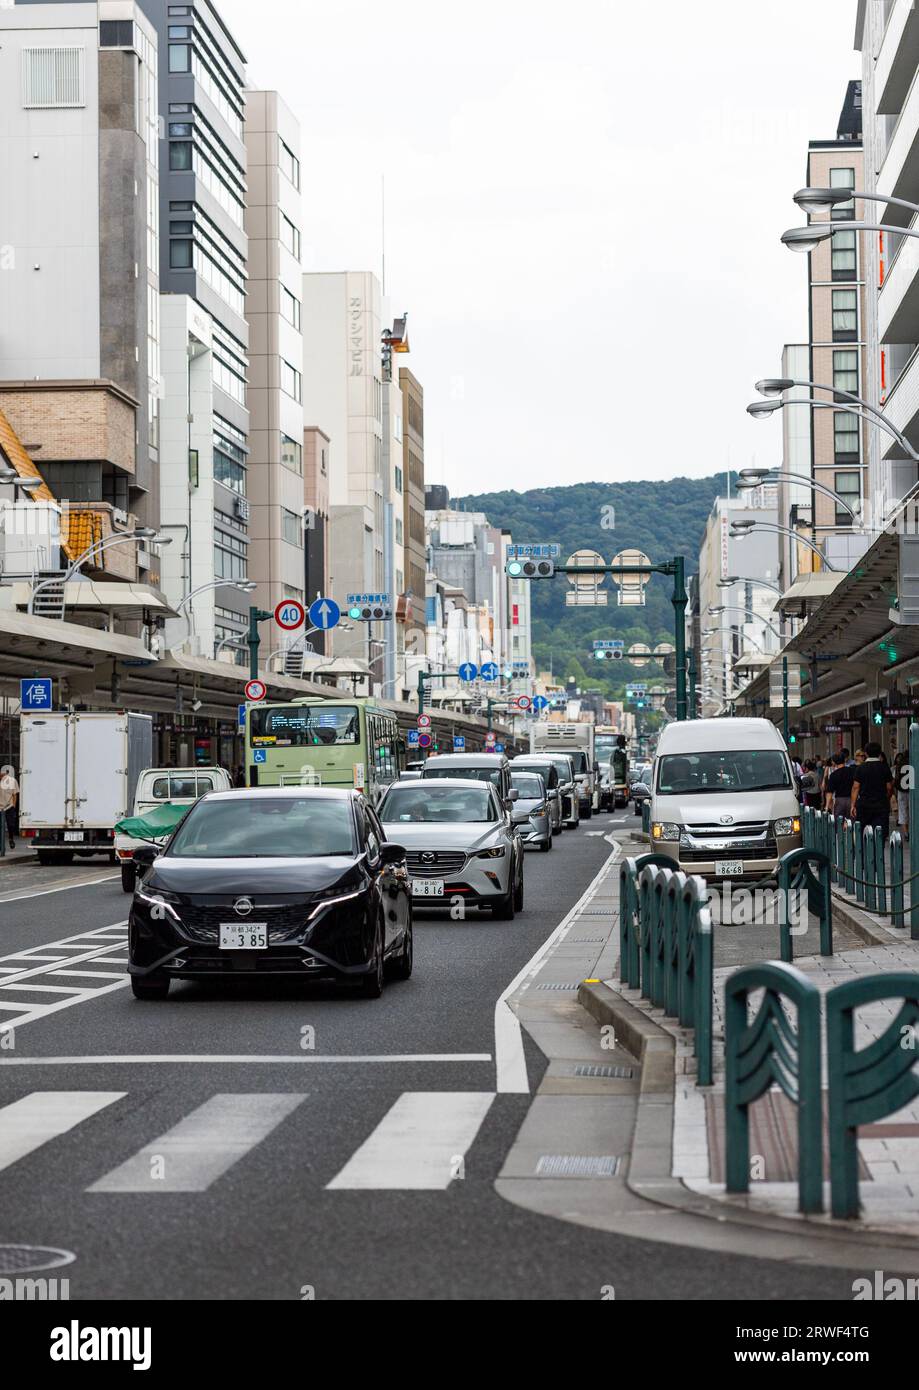 Cars in the city, Kansai region, Kyoto, Japan Stock Photo